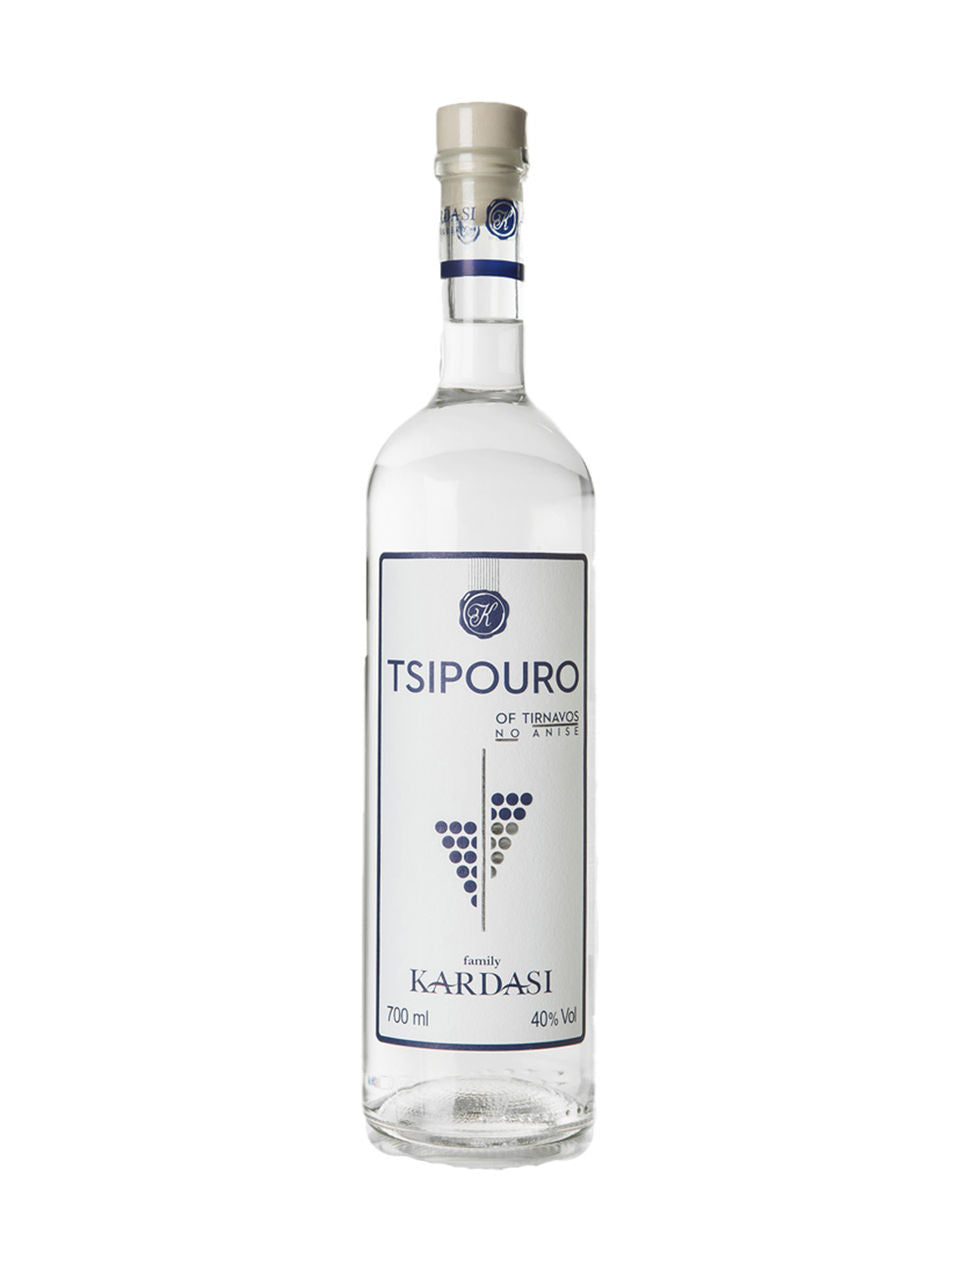 Kardasi Tsipouro Tirnavou No Anise 750 ml bottle